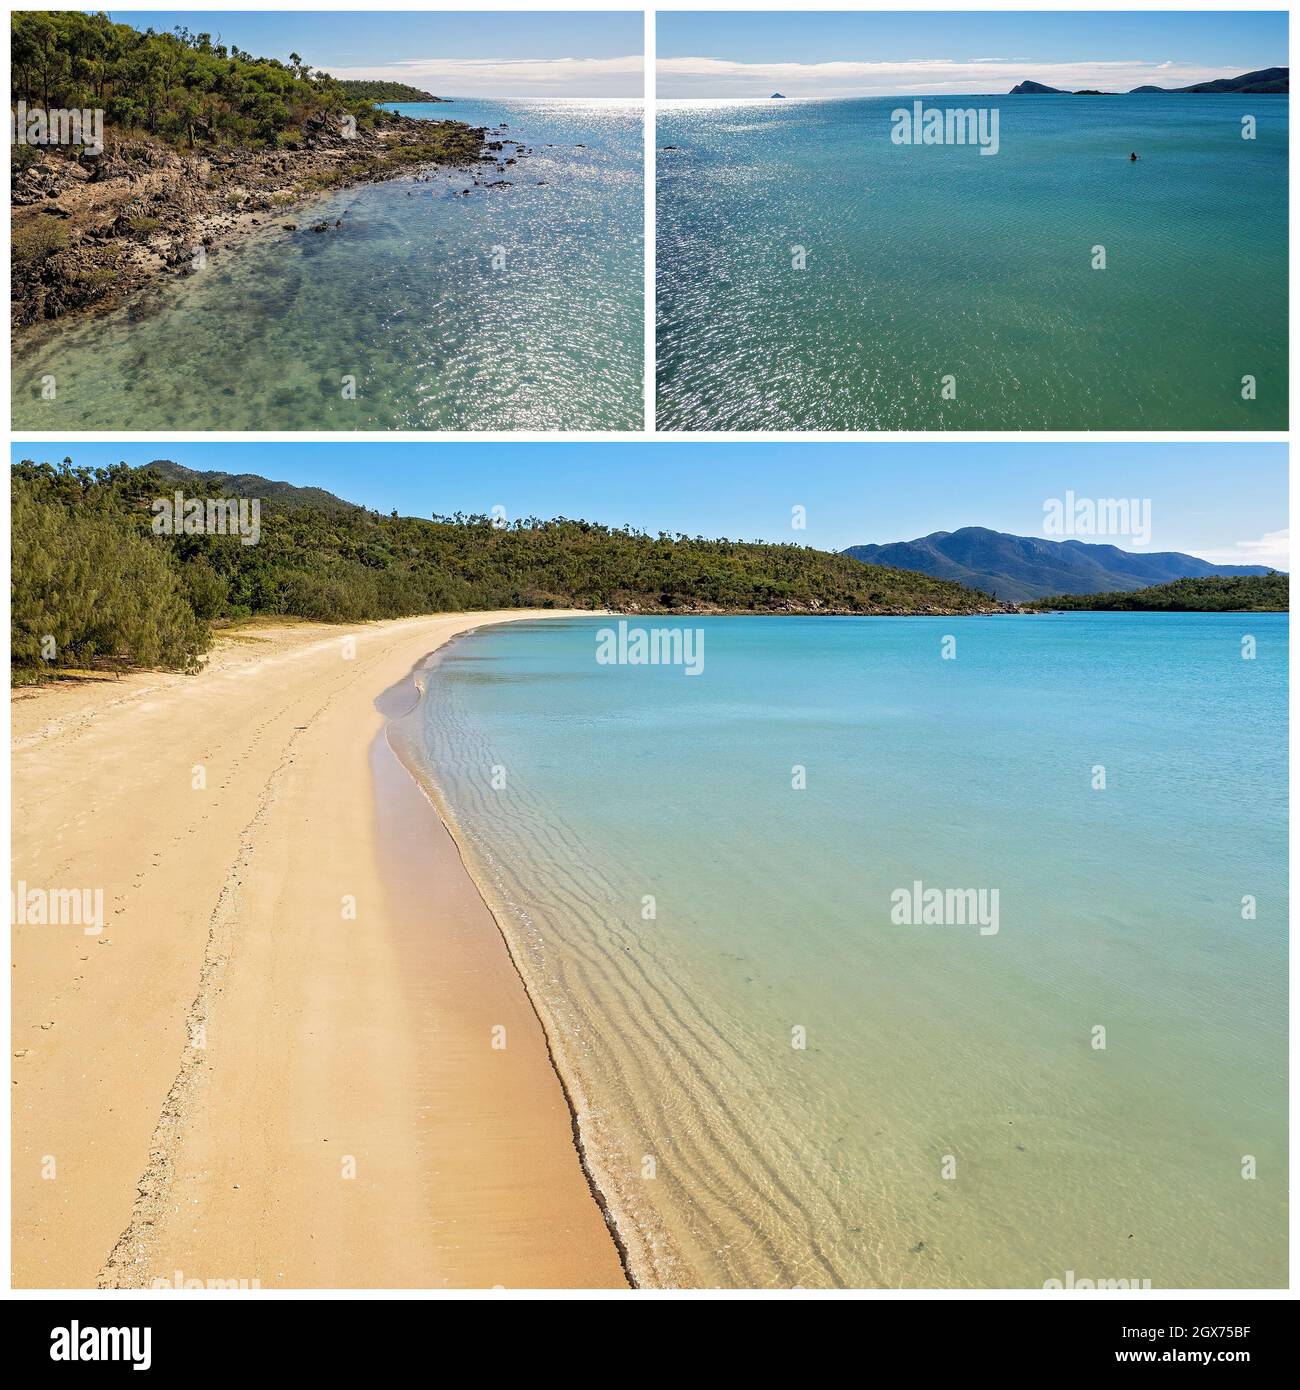 Un collage de trois images d'une longue plage de sable tropical et d'un rivage rocheux avec une personne non identifiable sur un kayak profitant de l'océan Banque D'Images